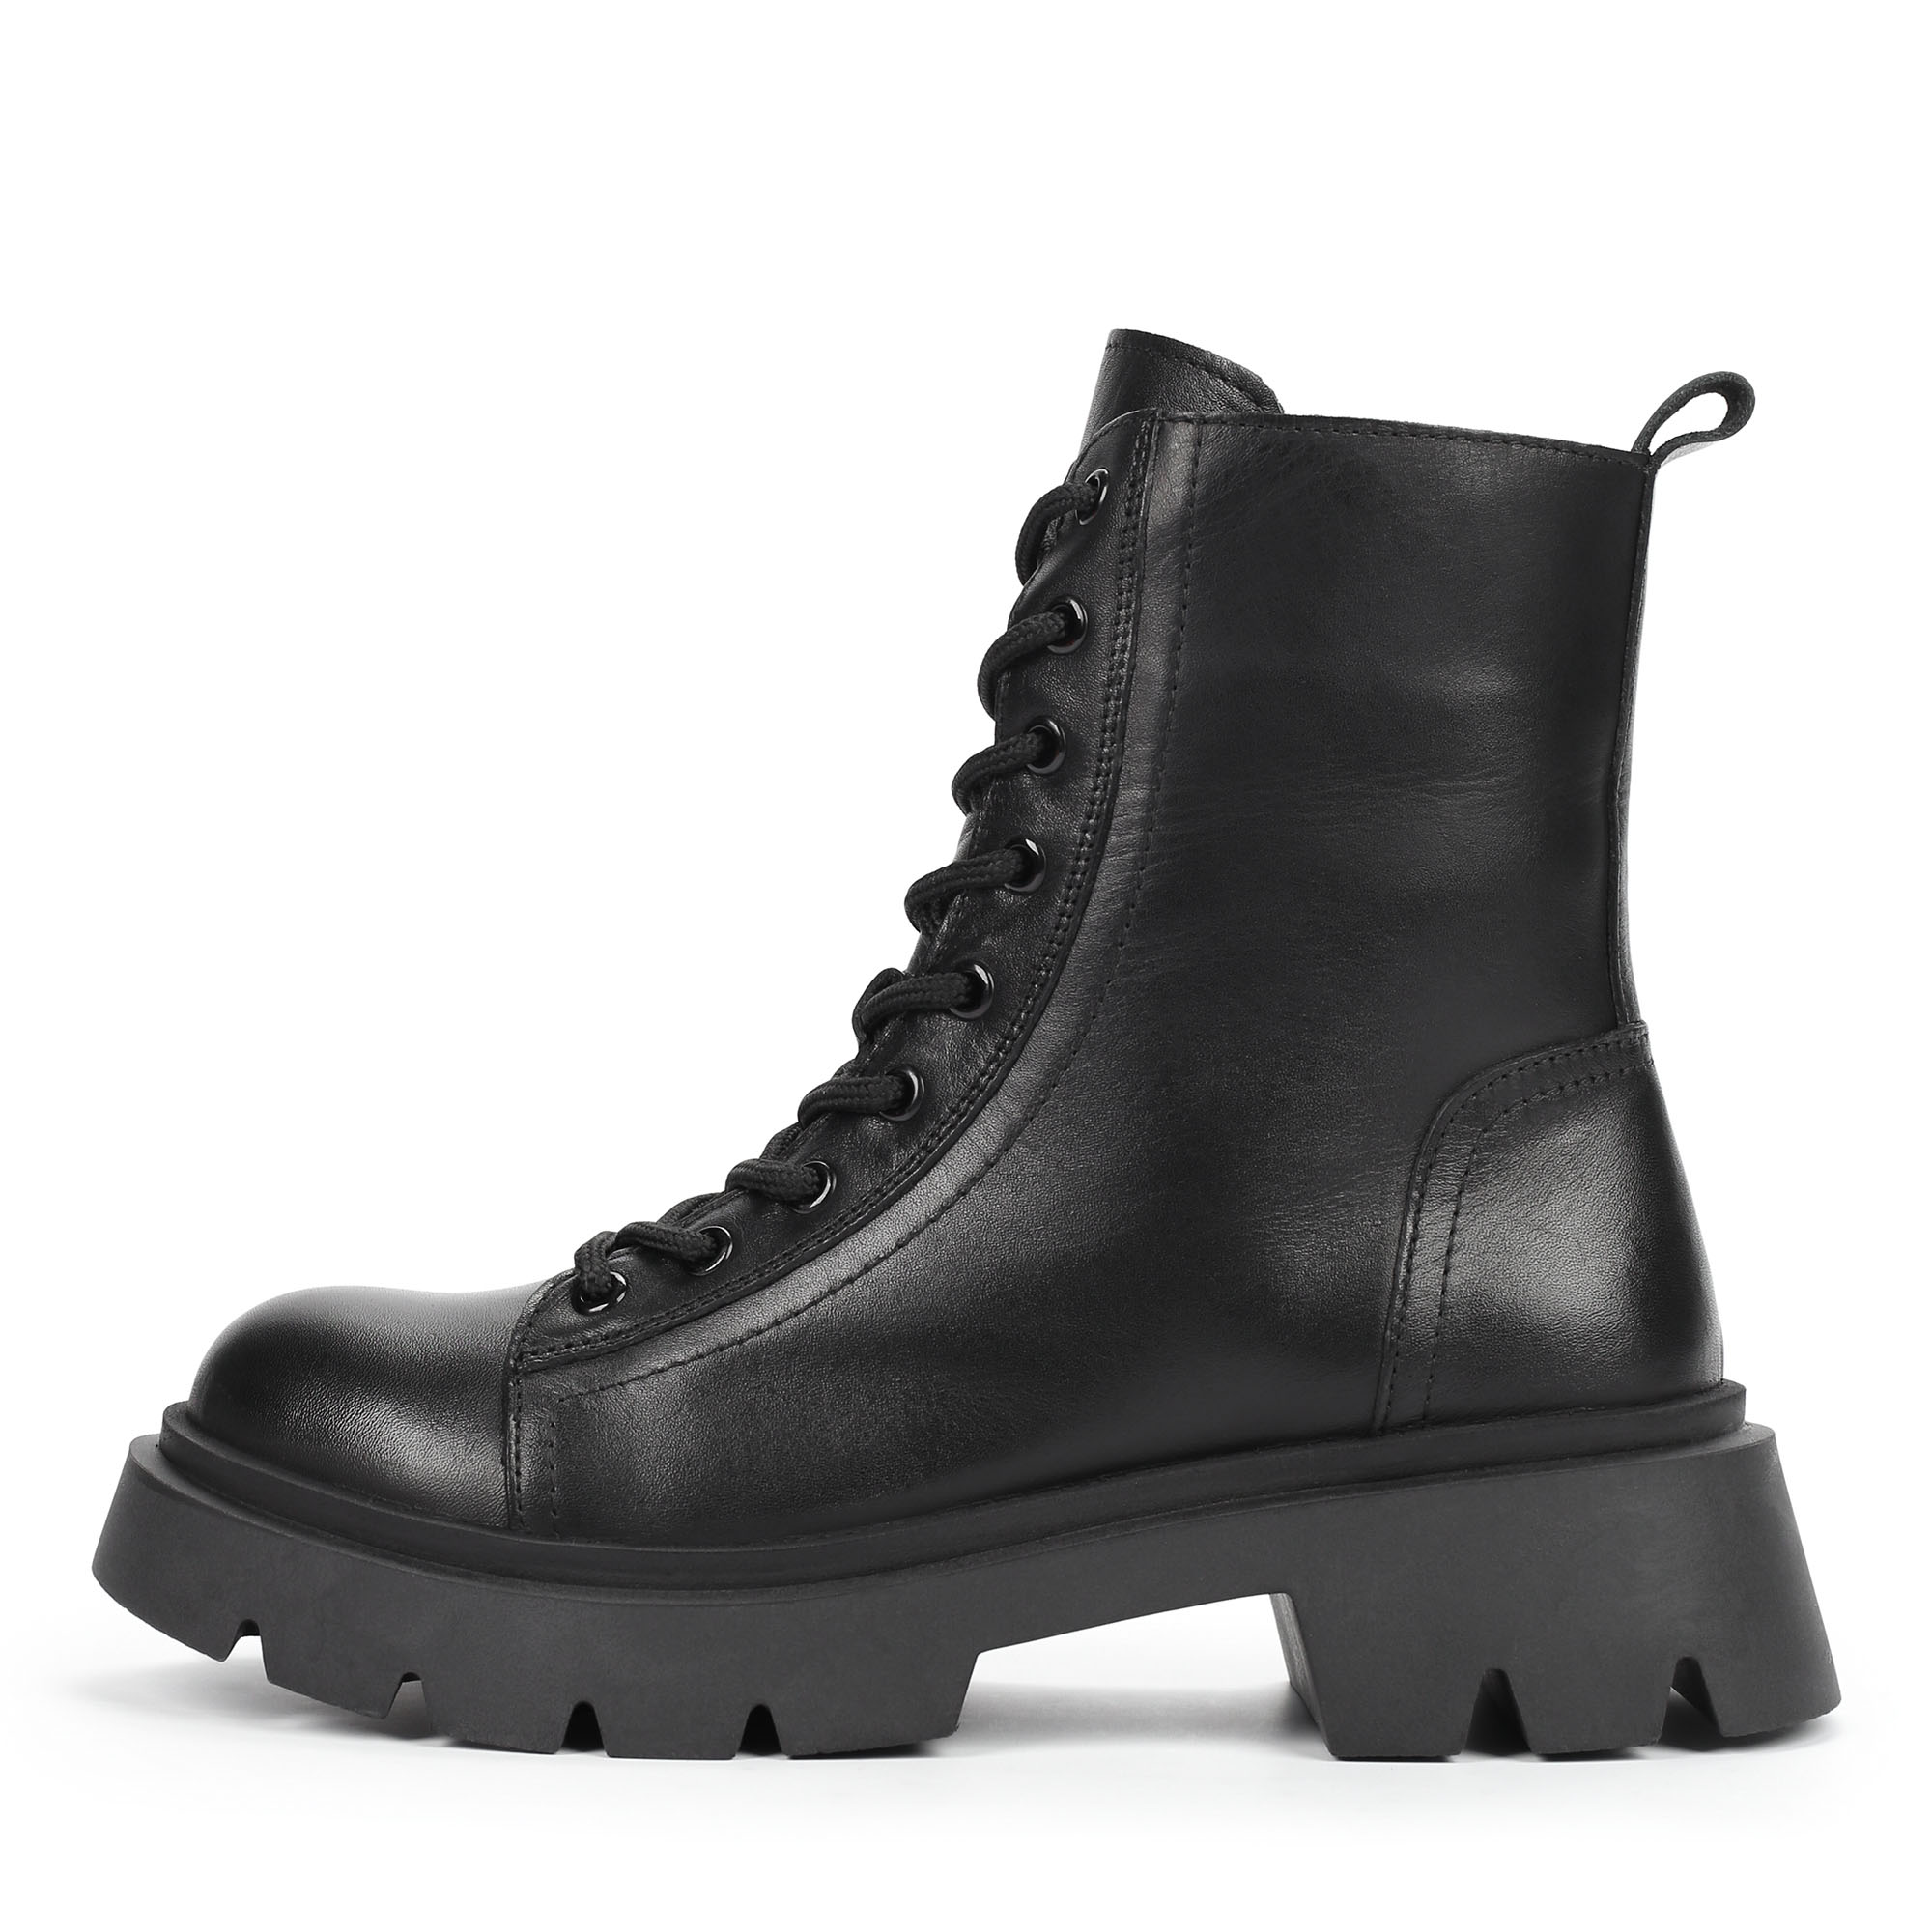 Ботинки Thomas Munz 555-006B-2102, цвет черный, размер 37 - фото 1